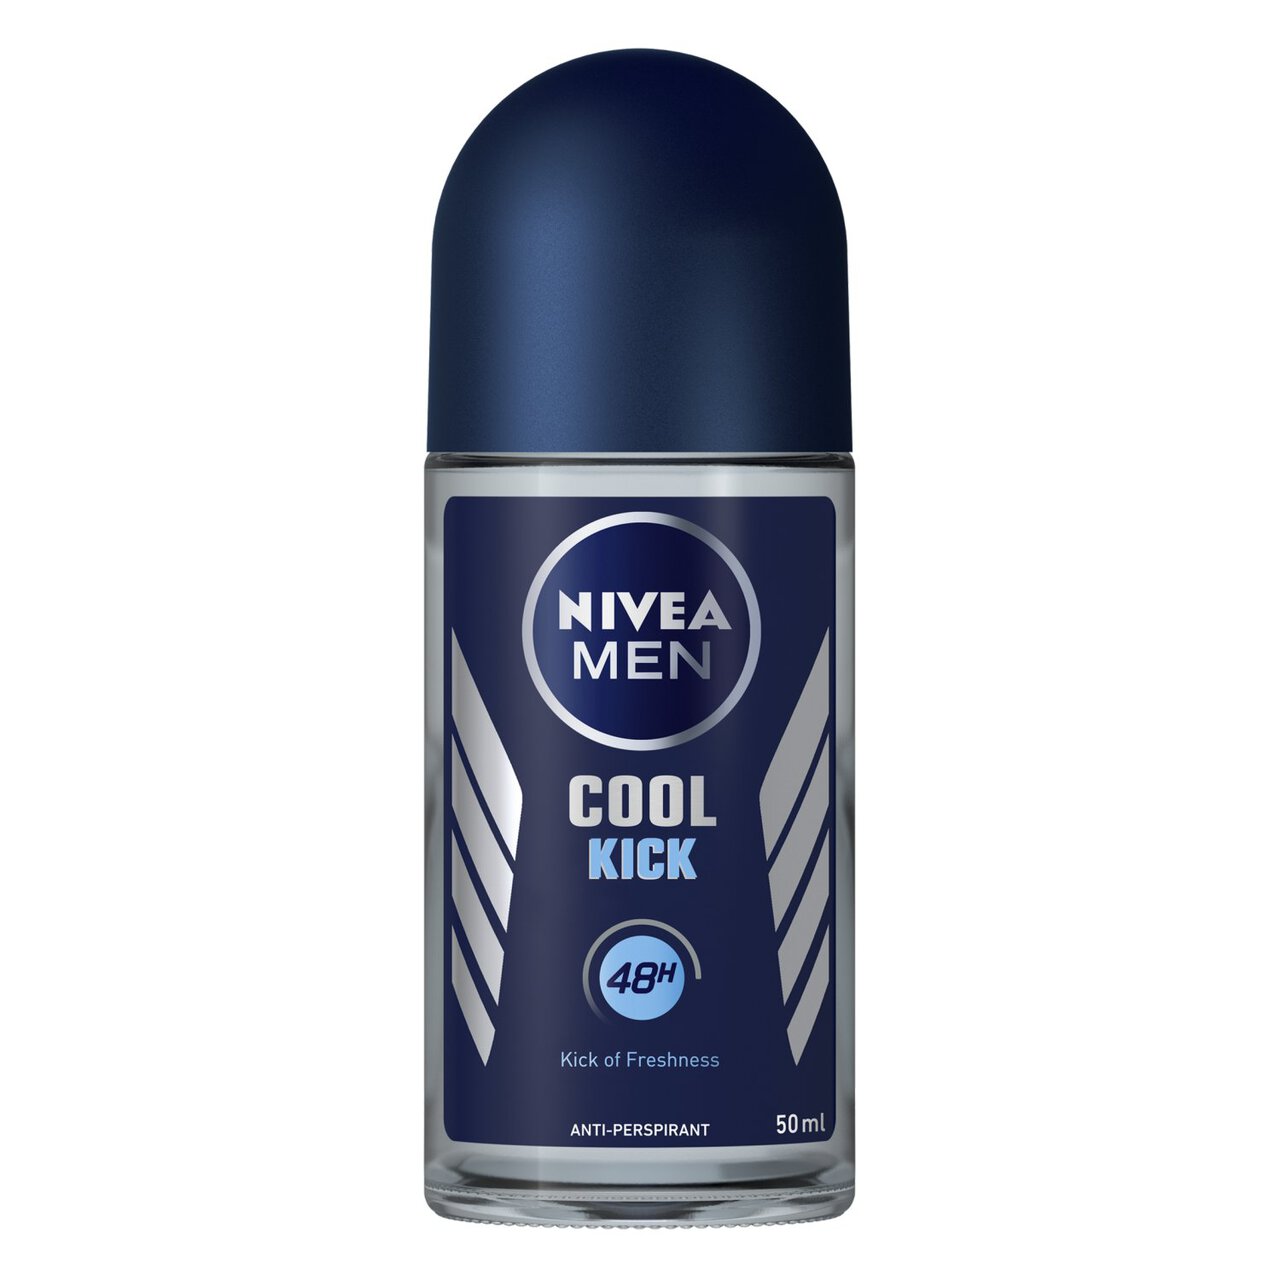 NIVEA MEN Cool Kick Anti-Perspirant Deodorant Roll-On 50ml